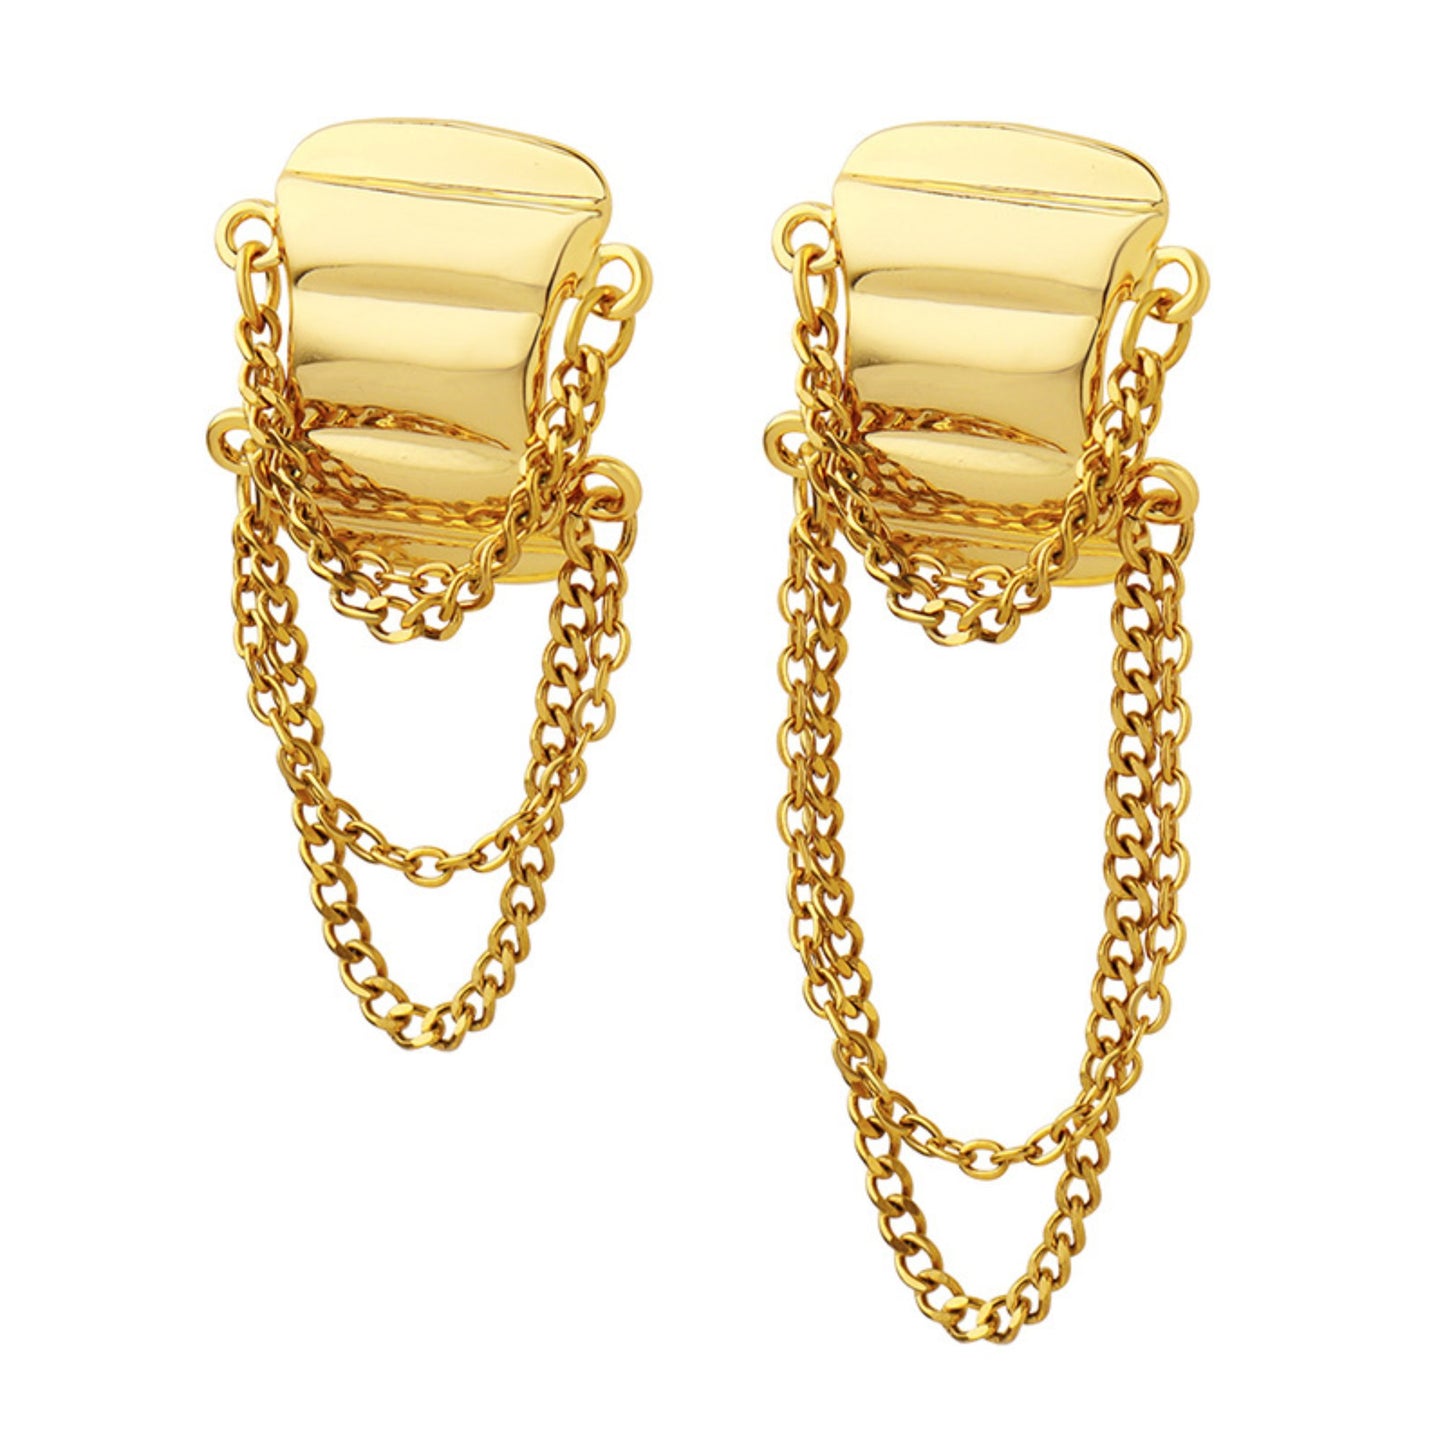 Chain Tassel Earrings/Waterproof